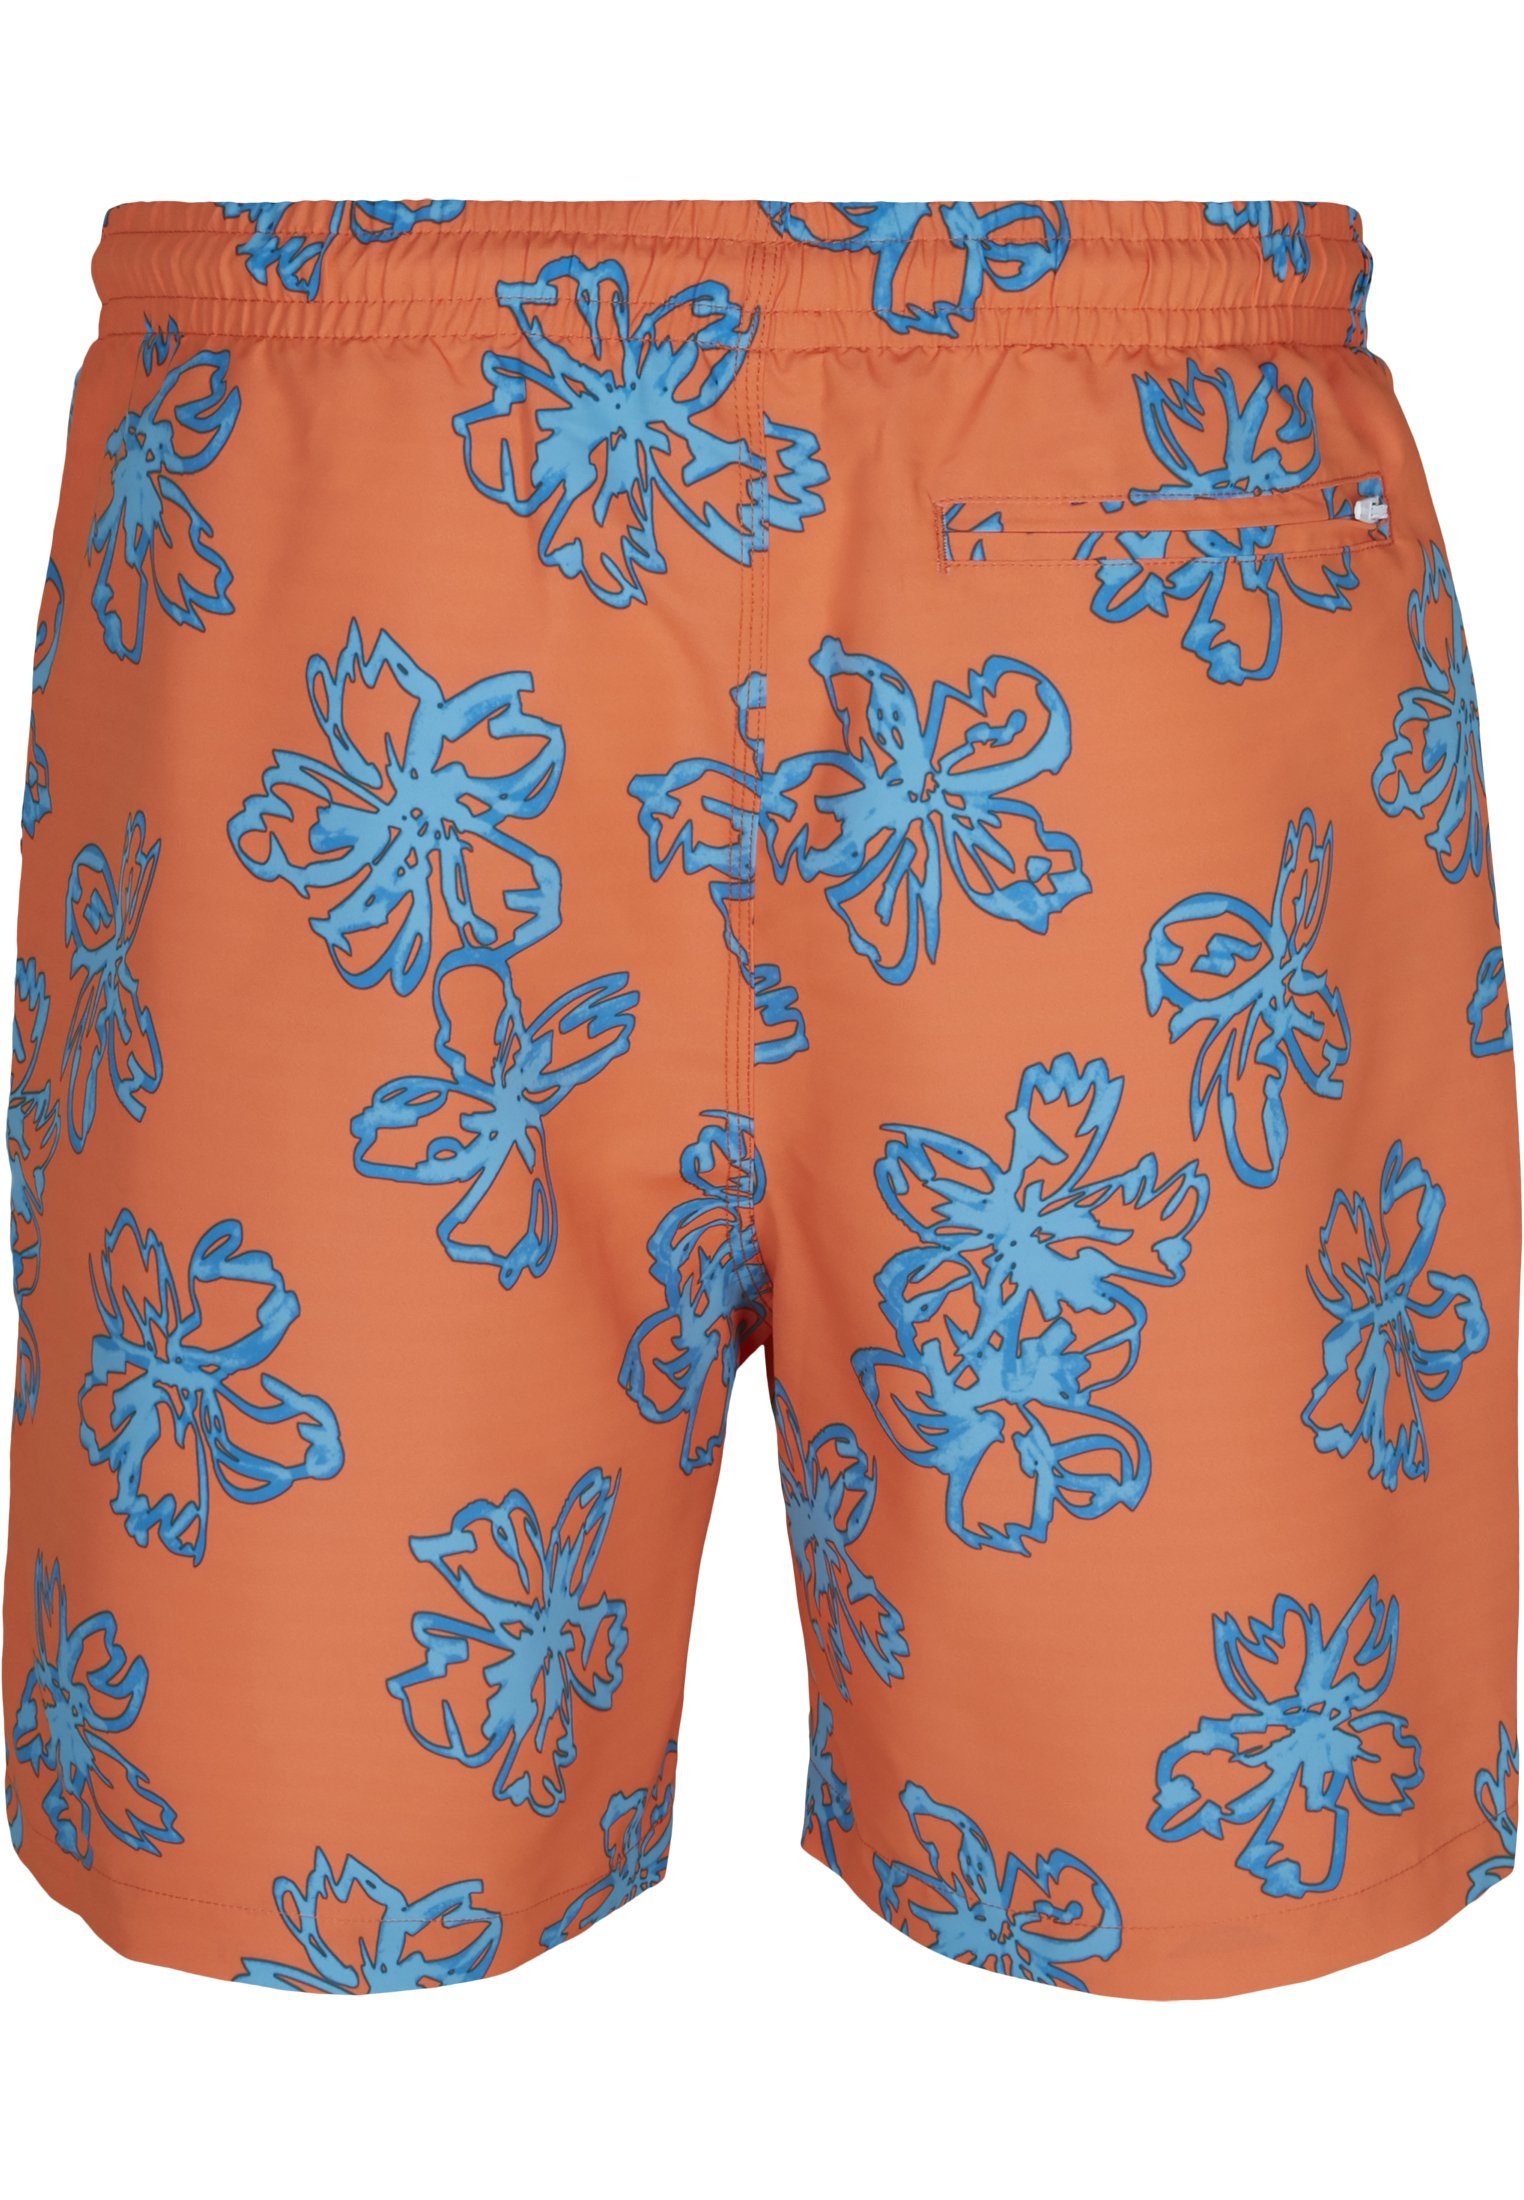 URBAN CLASSICS Badeshorts orange Floral Herren Swim Shorts